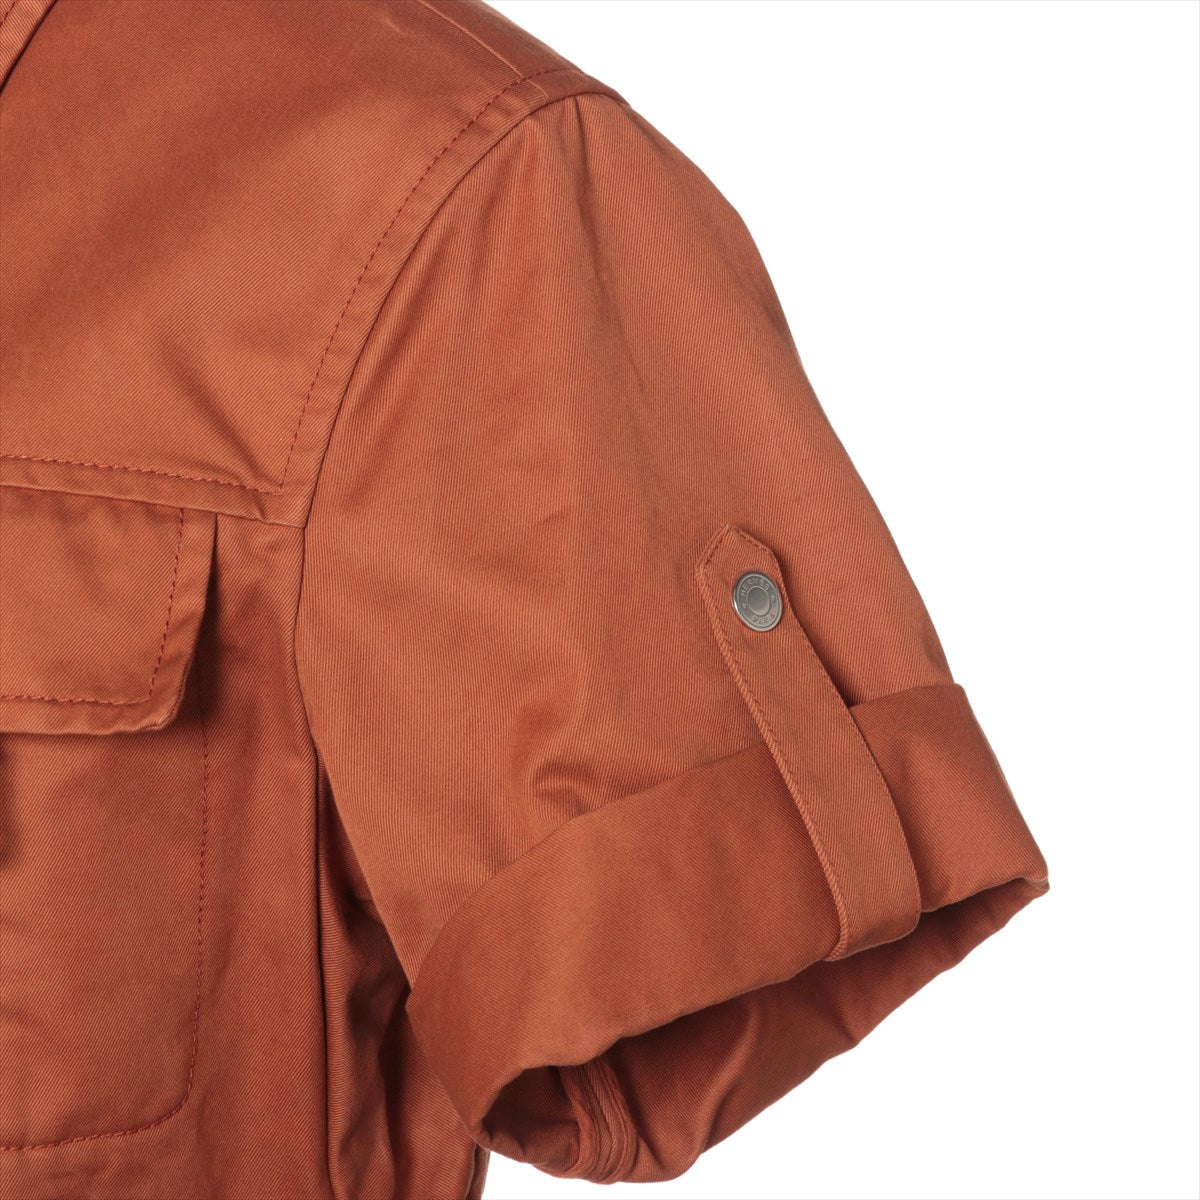 Hermès 20AW Cotton Jumpsuit 38 Ladies' Orange  06-7405 Serie Button